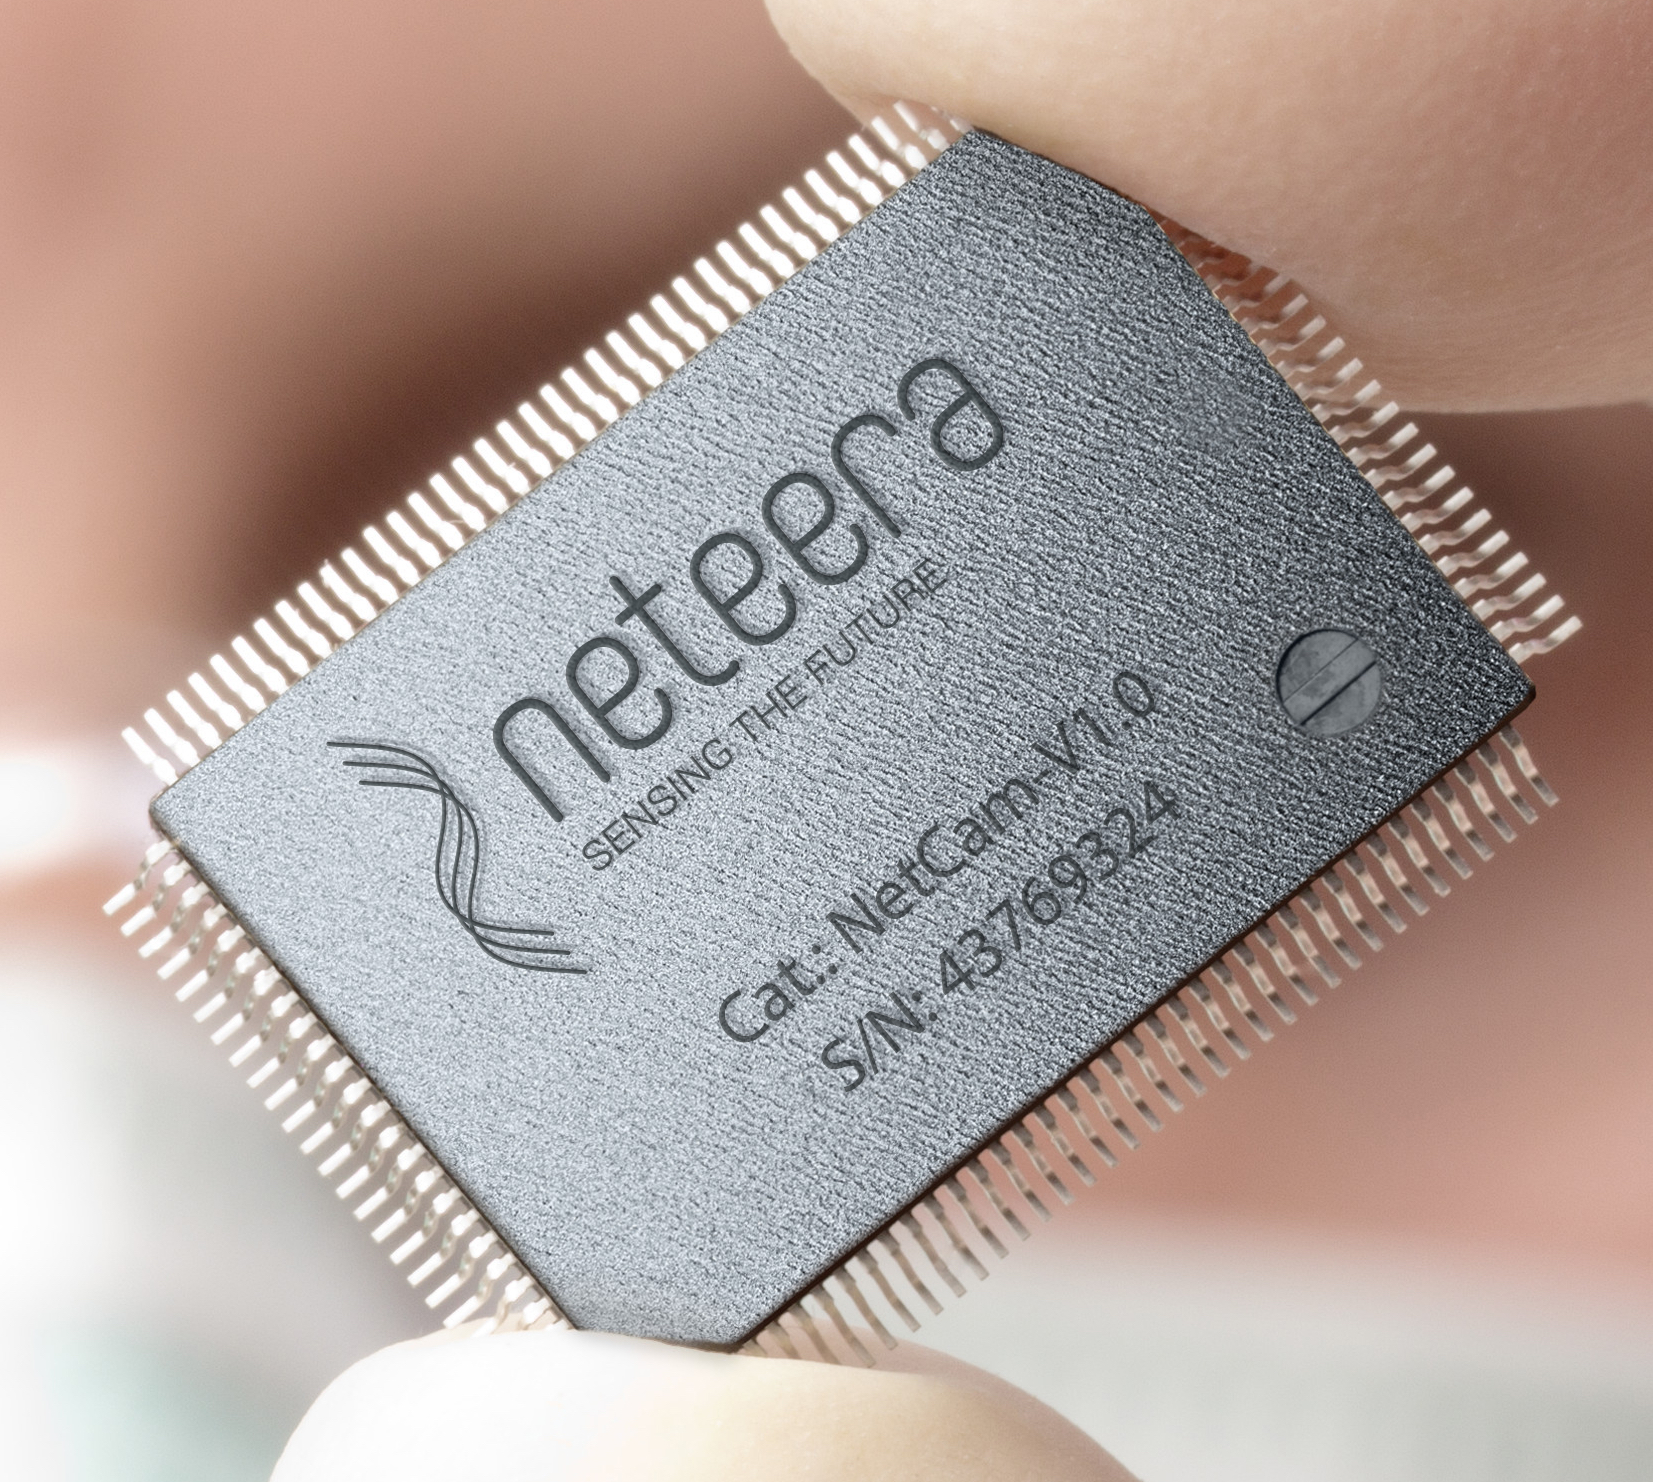 The chip inside Neteera’s nano camera. Photo courtesy of Yissum